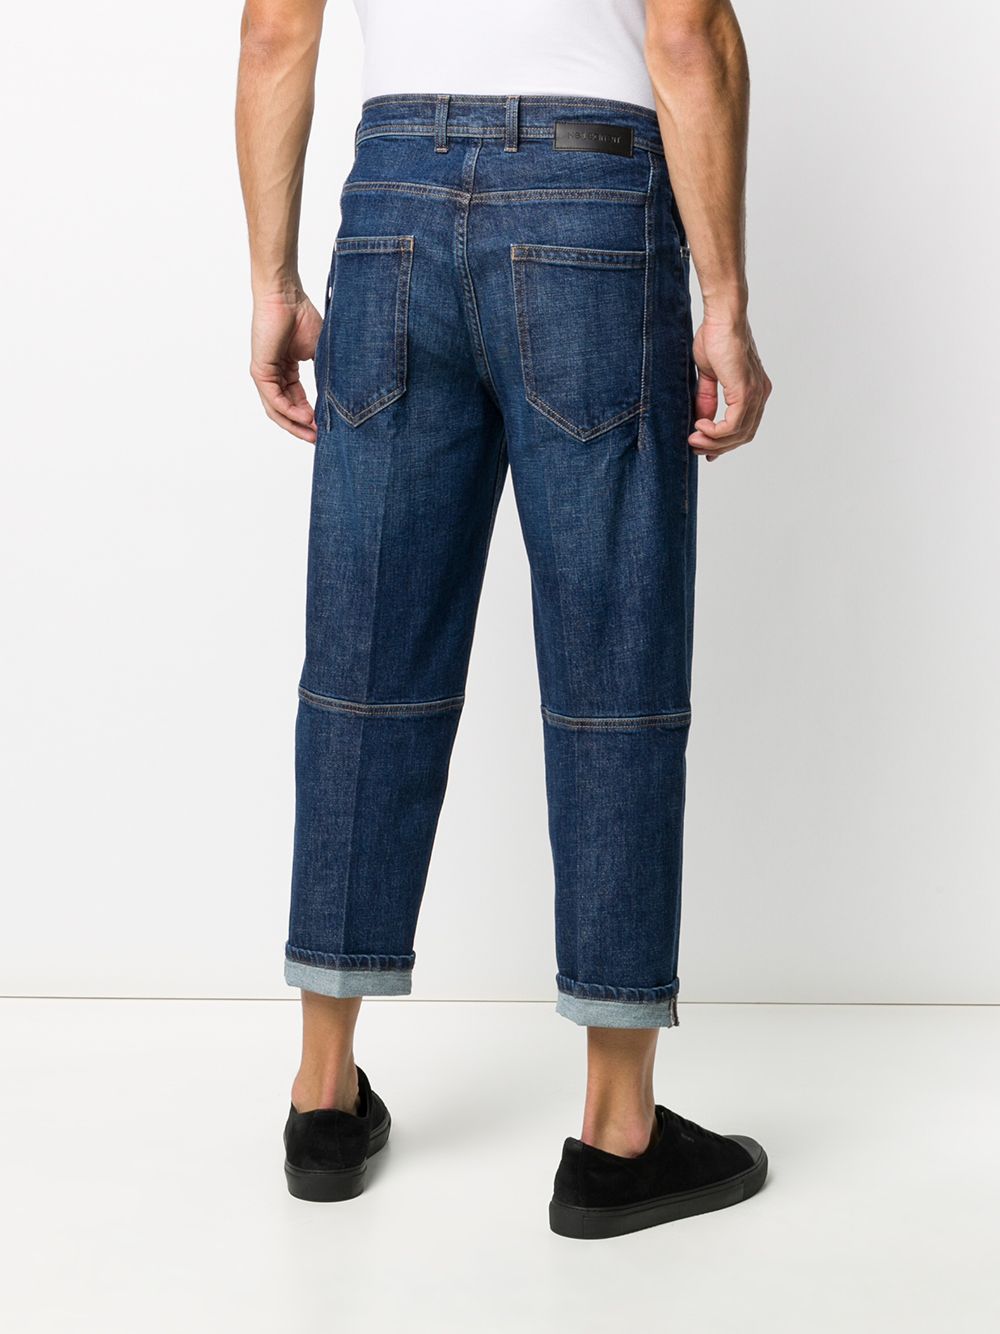 фото Neil barrett укороченные джинсы свободного кроя